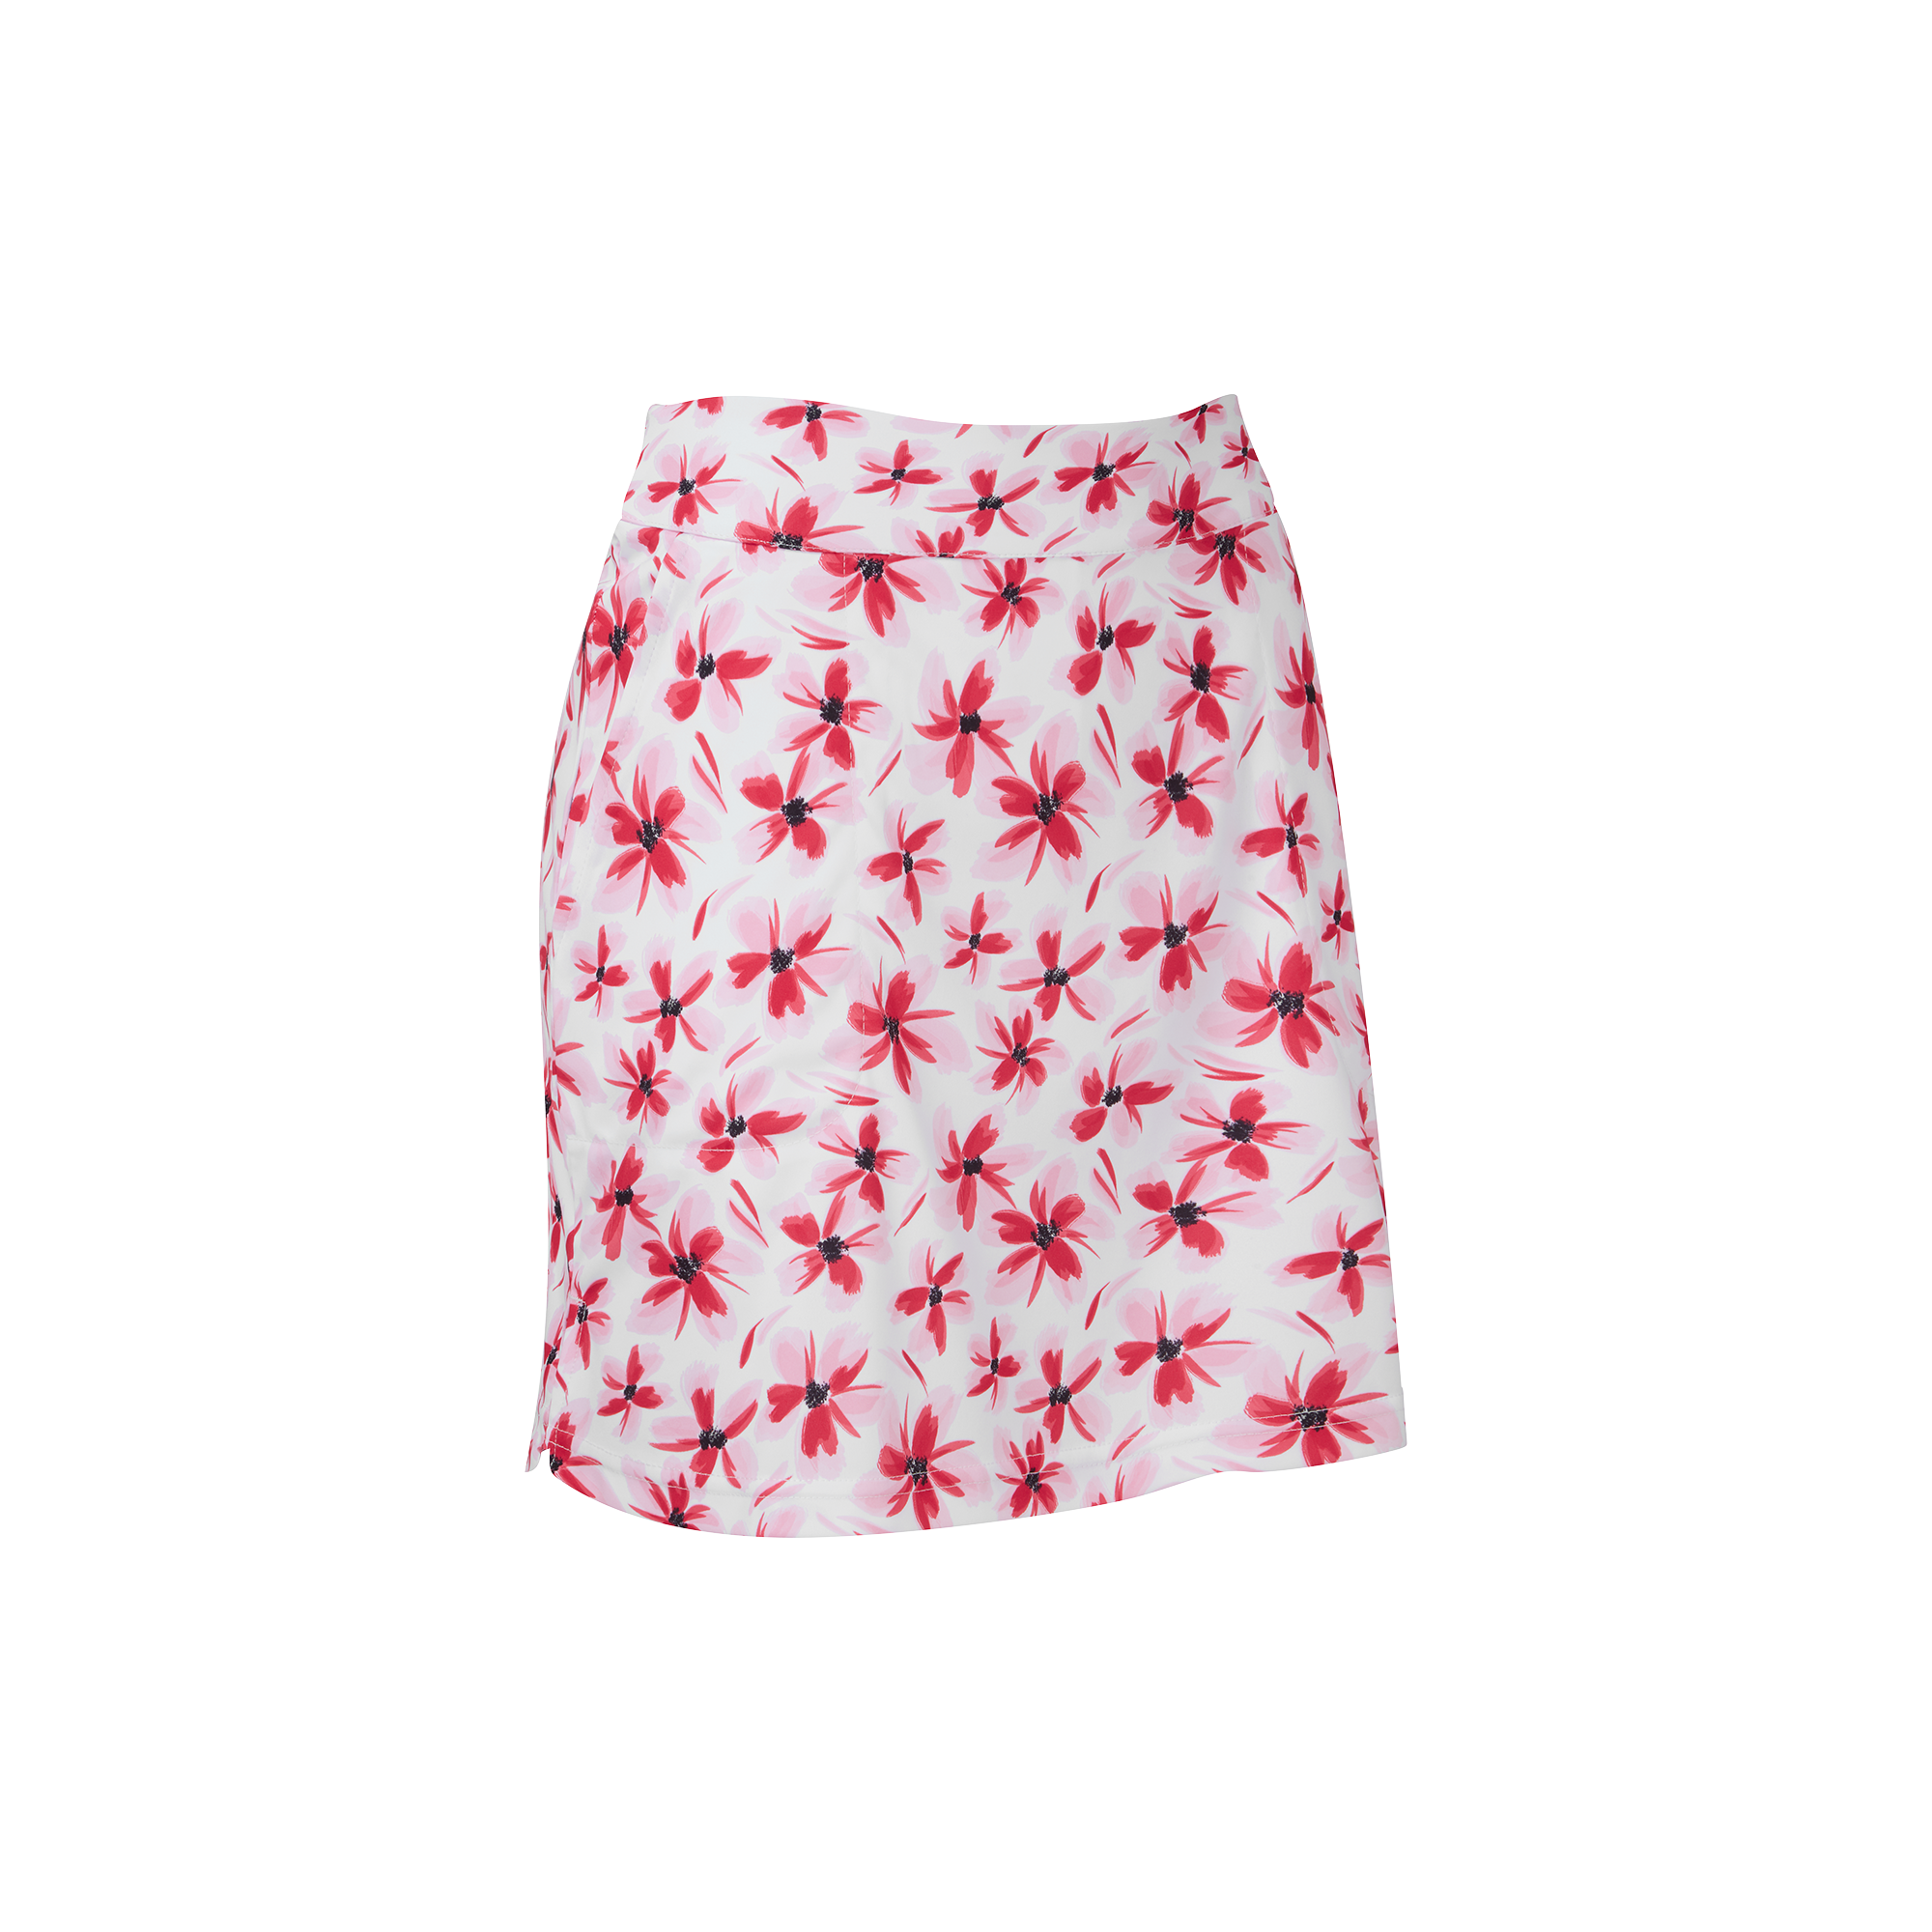 FootJoy Floral Print Knit dámská golfová sukně, bílá/červená, vel. M